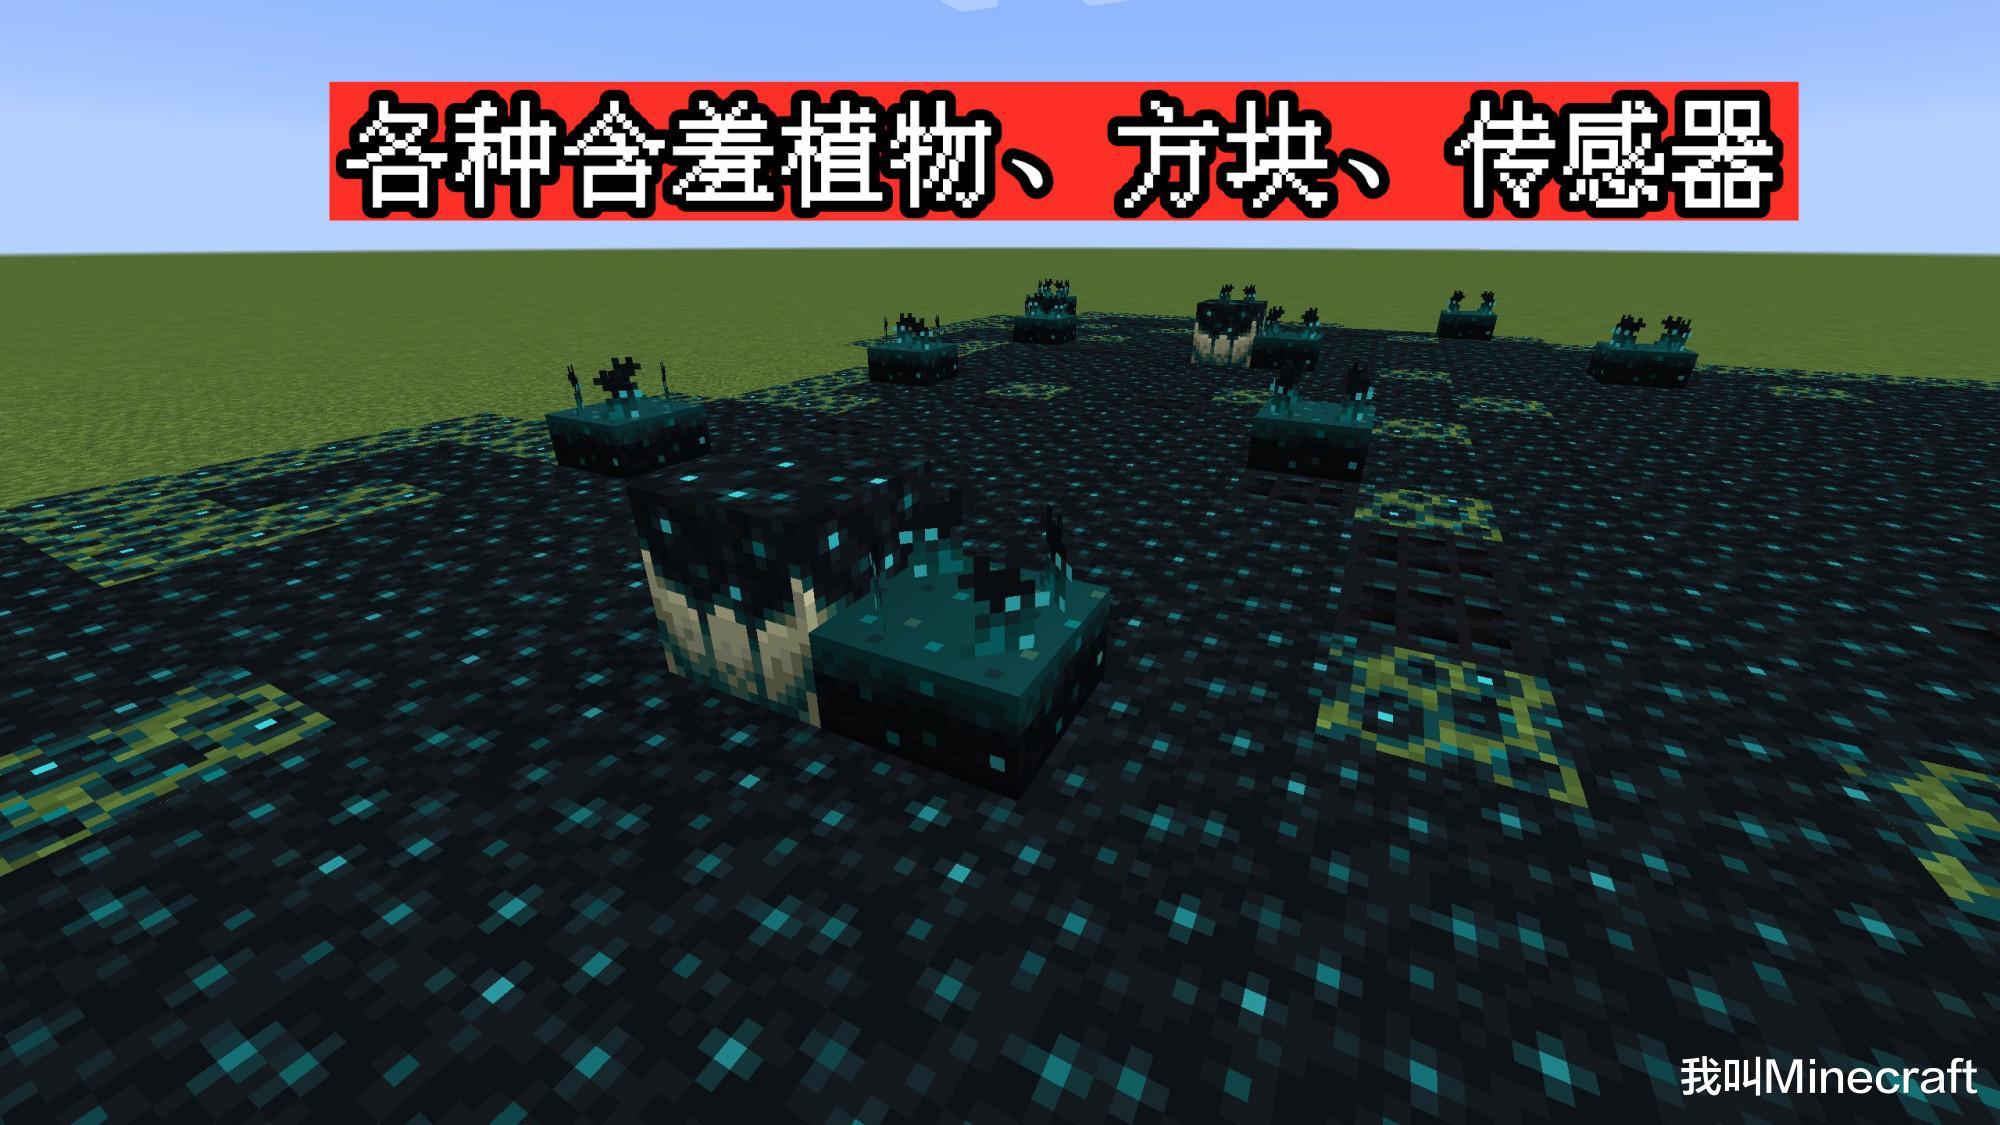 minecraft 1.17剧透:紫水晶可以种植,避雷针能召唤闪电骷髅马?